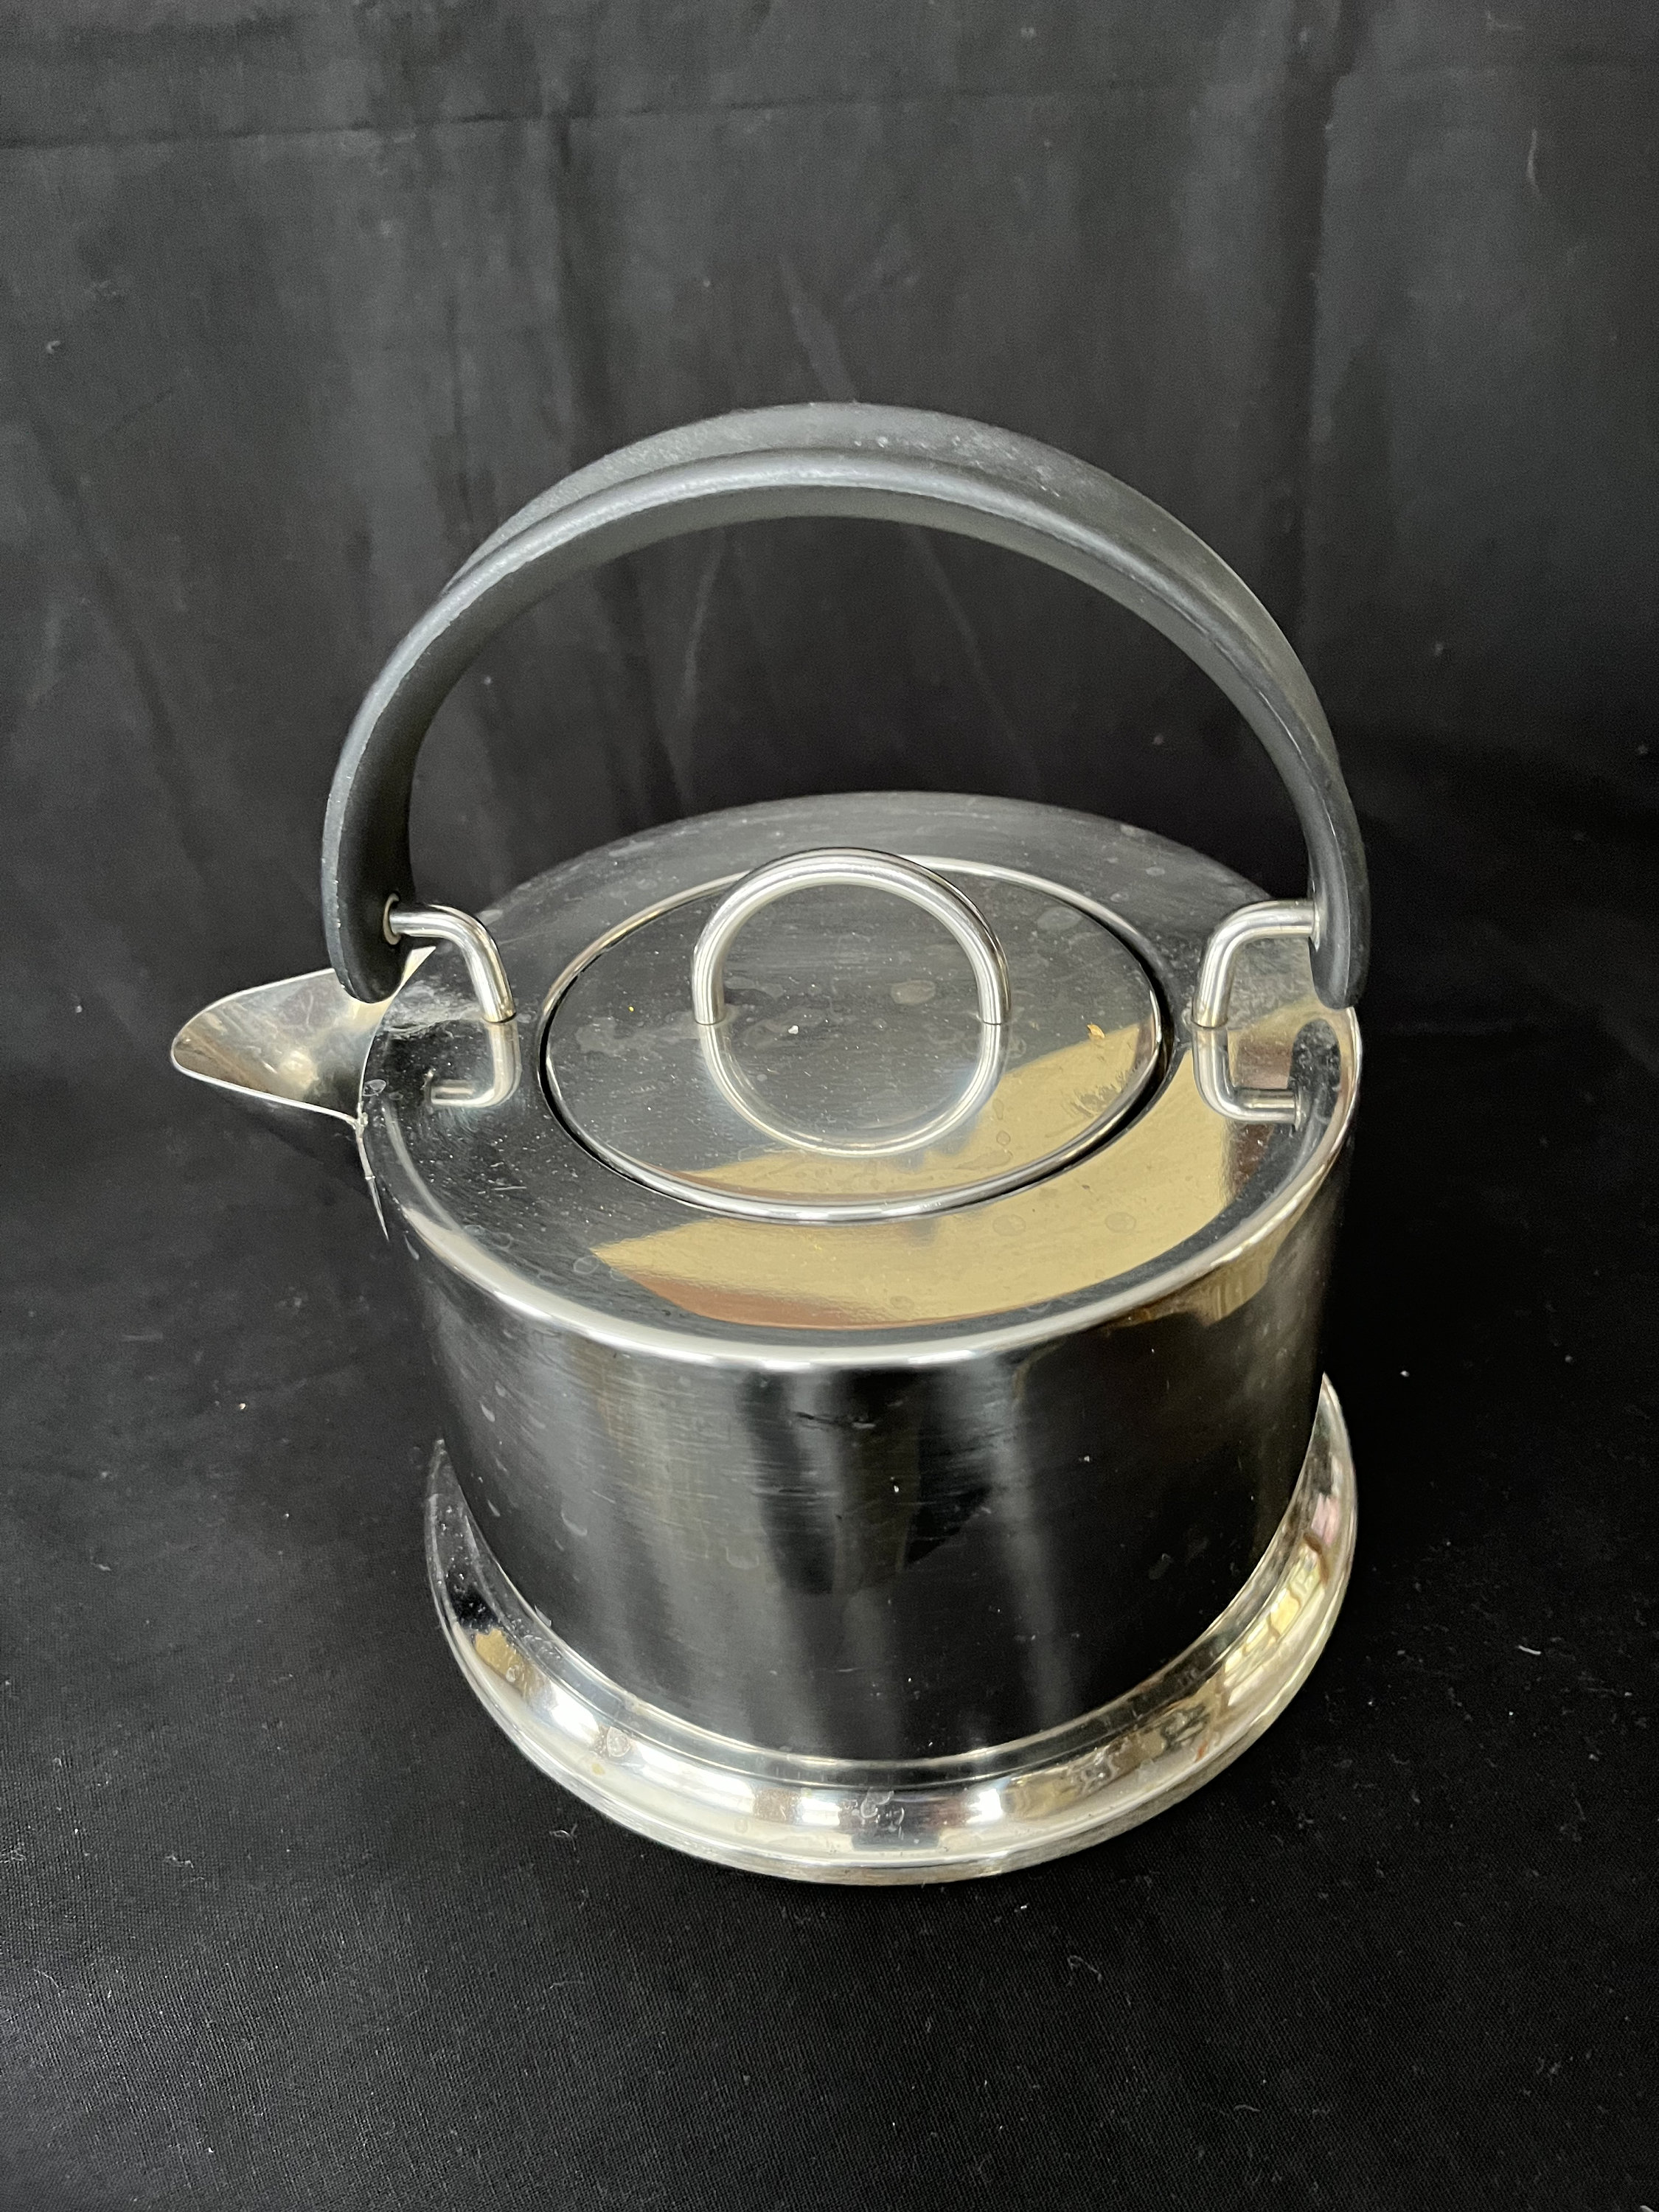 C. Jorgensen INOX 18/8 Bodum Tea Kettle Stainless Steel Made in